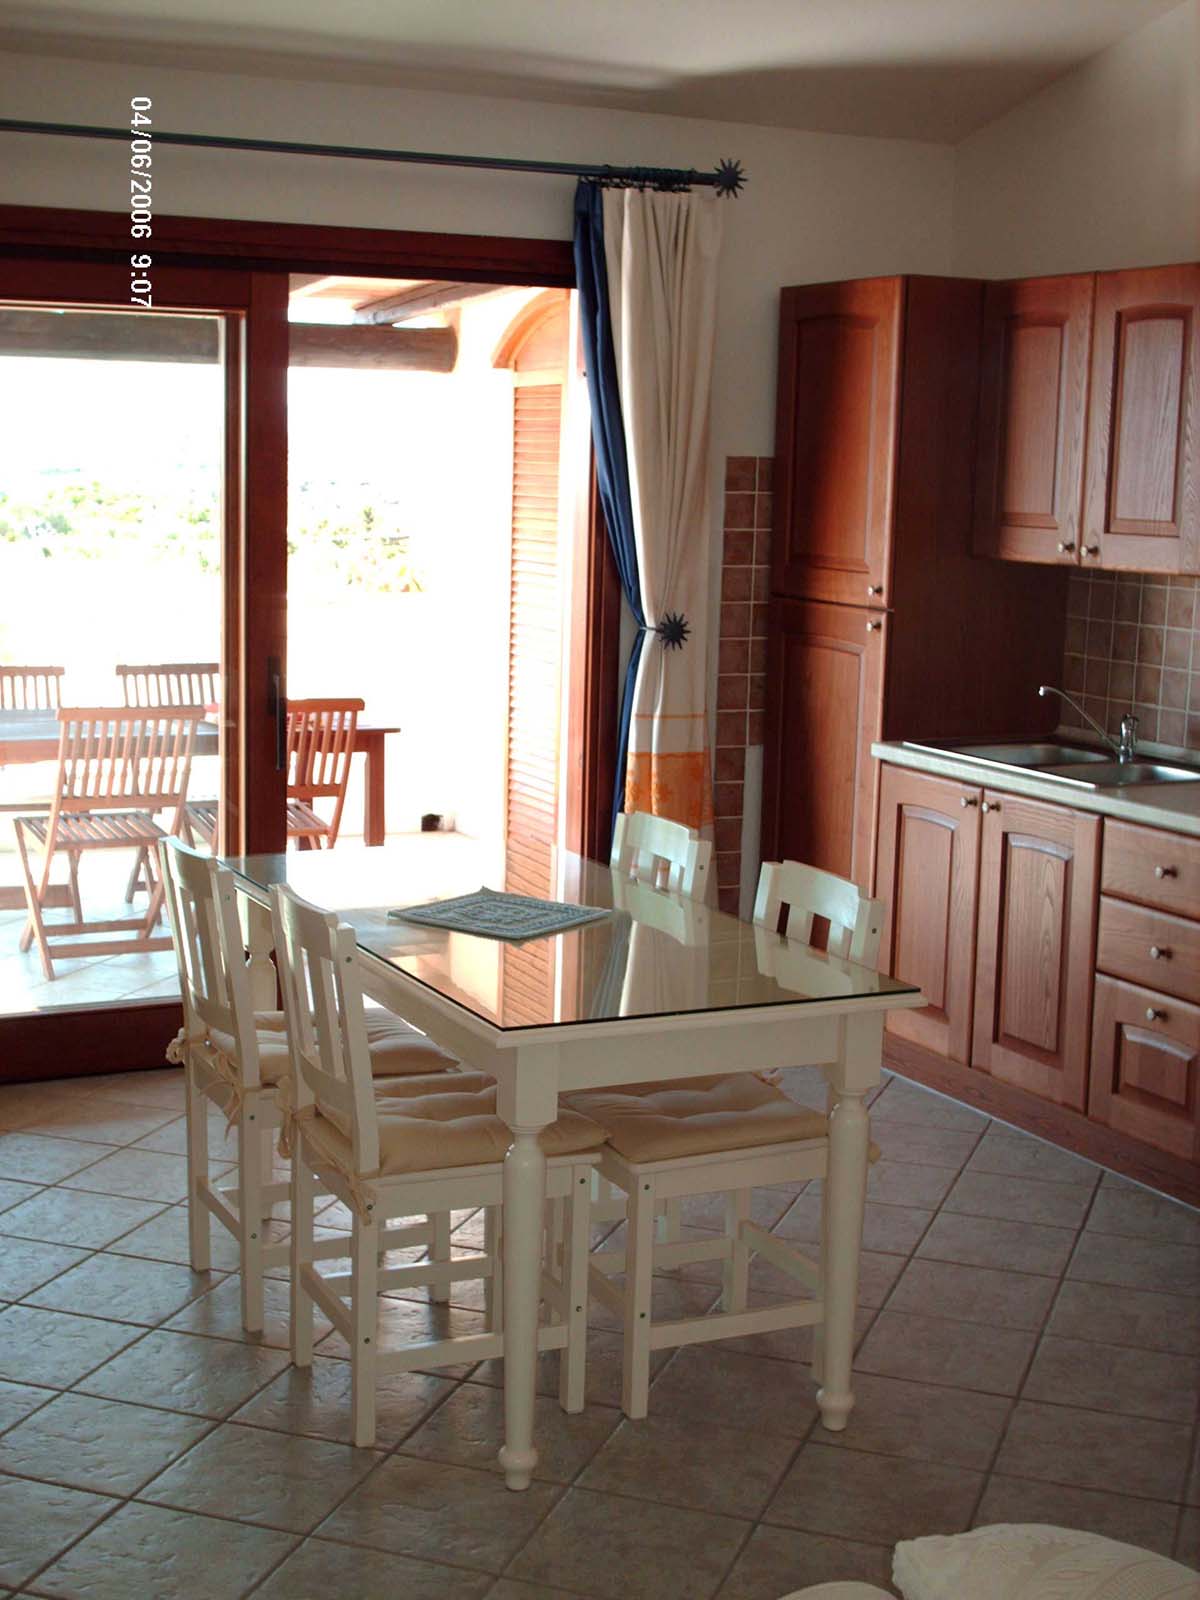 soggiorno - Appartamento vacanze al mare vicino Olbia e Golfo Aranci ville in Sardegna annunci affitto estate - Fotografie case in zona